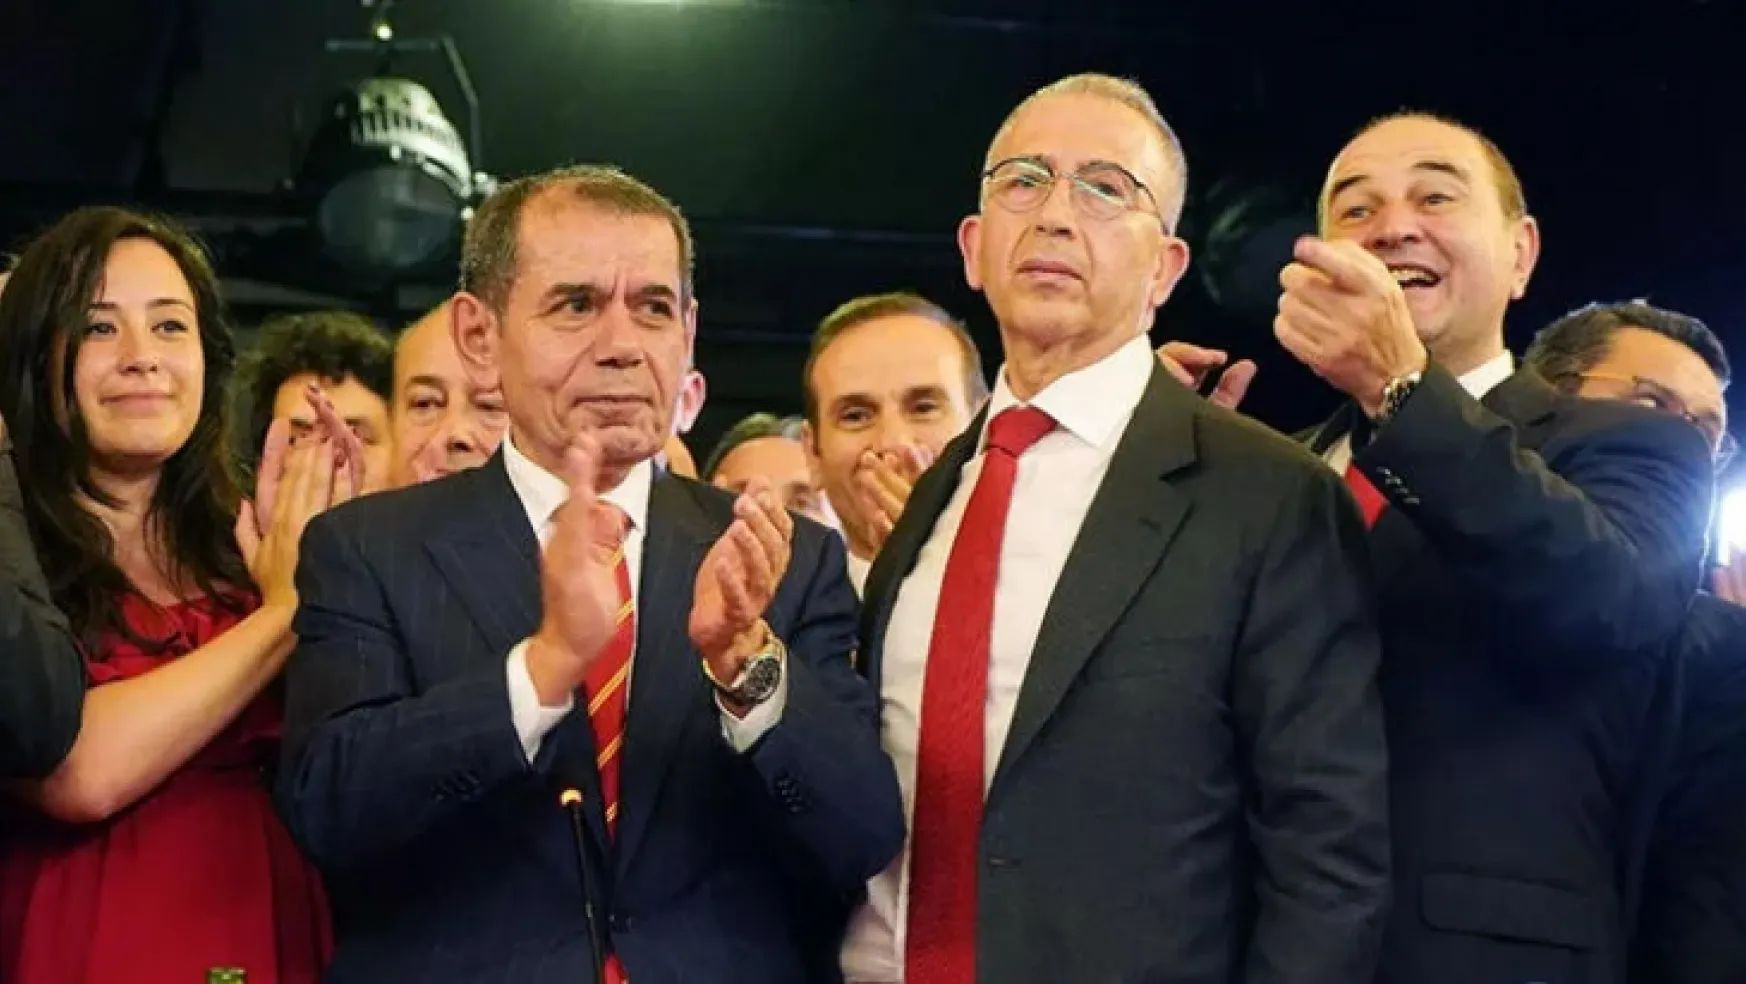 Galatasaray'ın yeni başkanı Dursun Özbek oldu